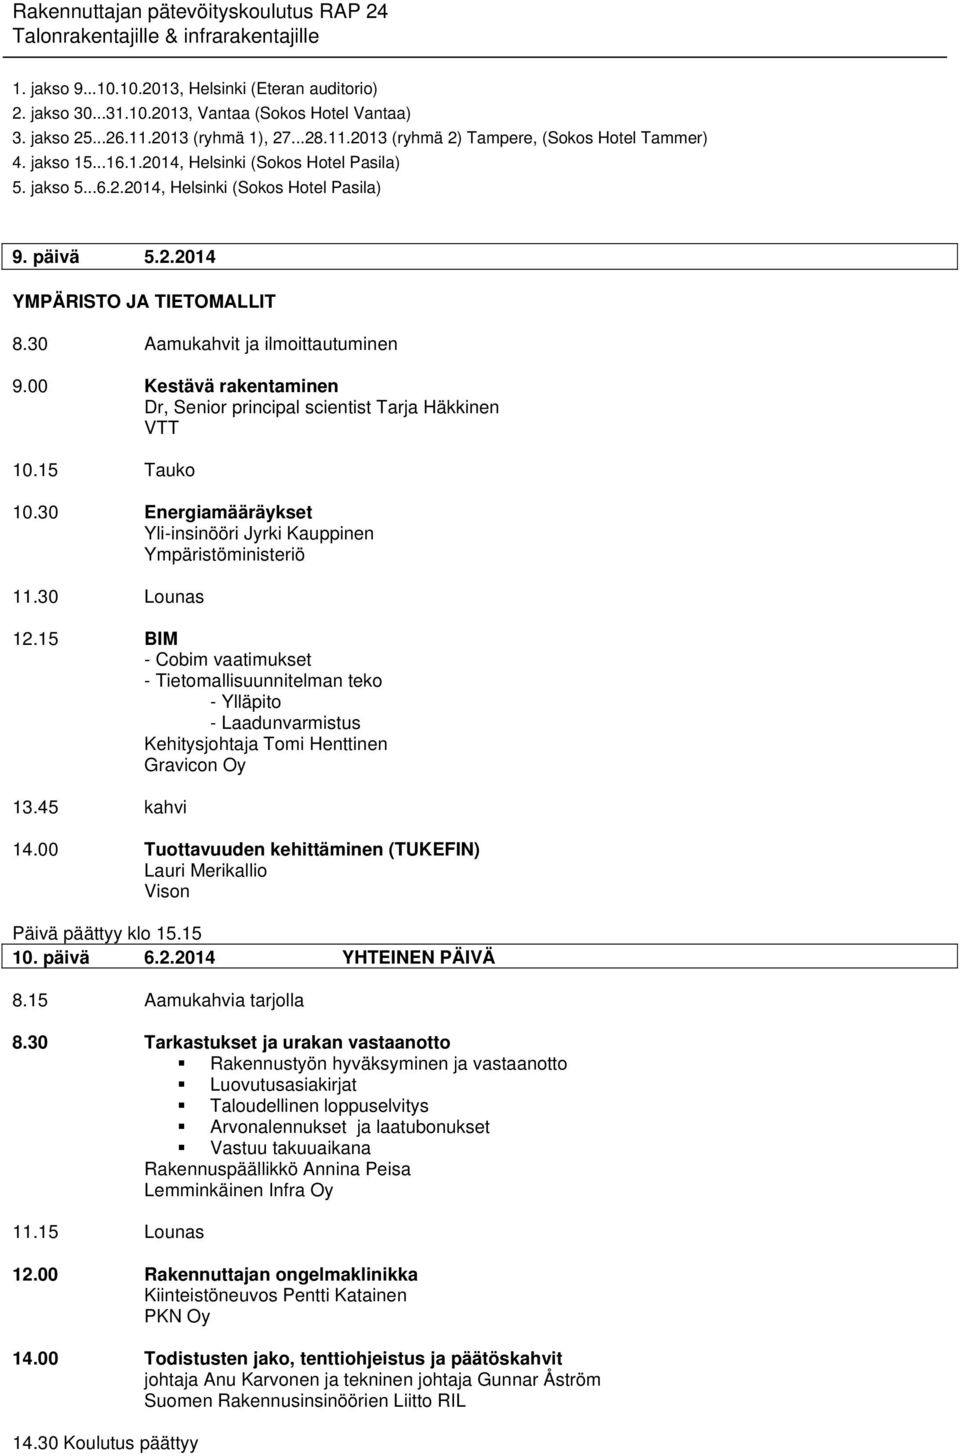 15 BIM - Cobim vaatimukset - Tietomallisuunnitelman teko - Ylläpito - Laadunvarmistus Kehitysjohtaja Tomi Henttinen Gravicon Oy 13.45 kahvi 14.